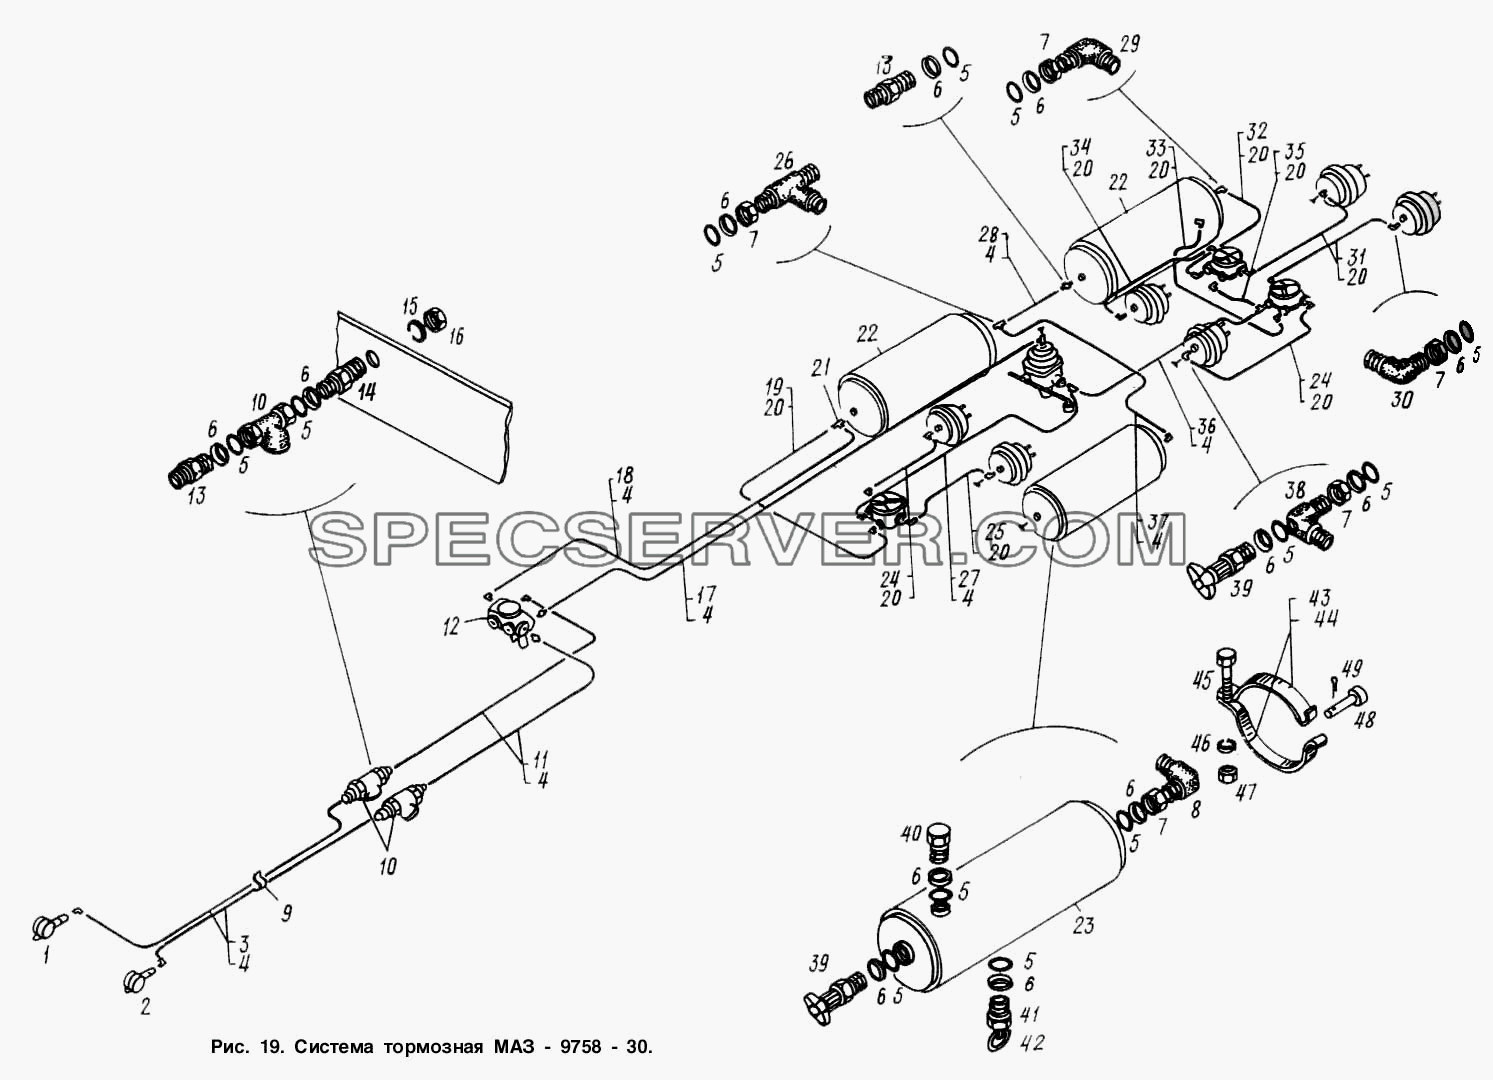 Система тормозная МАЗ 9758-30 для МАЗ-9758 (список запасных частей)